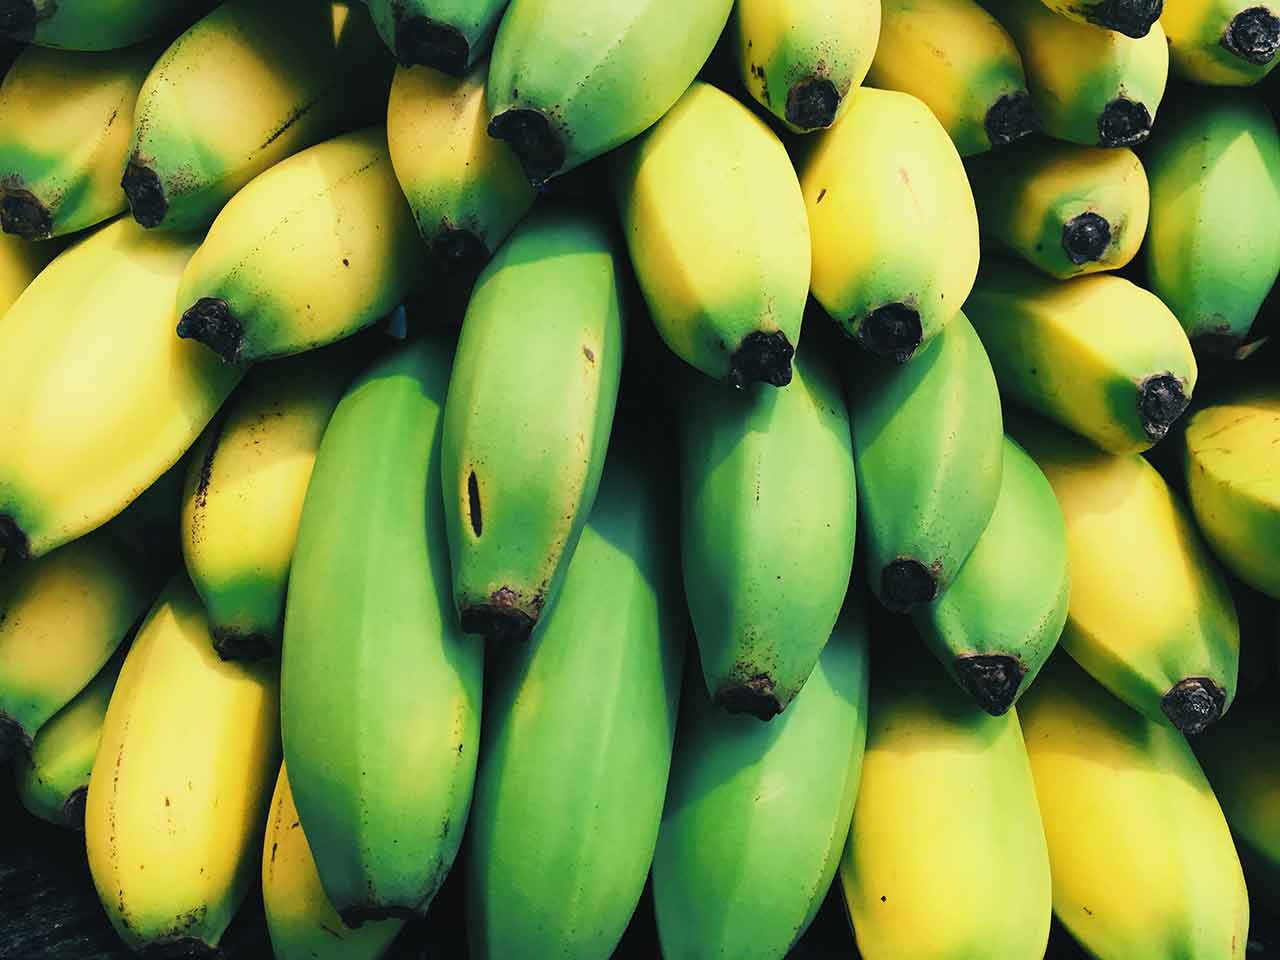 אחסון בננות: איך לאחסן אותן לאורך זמן?